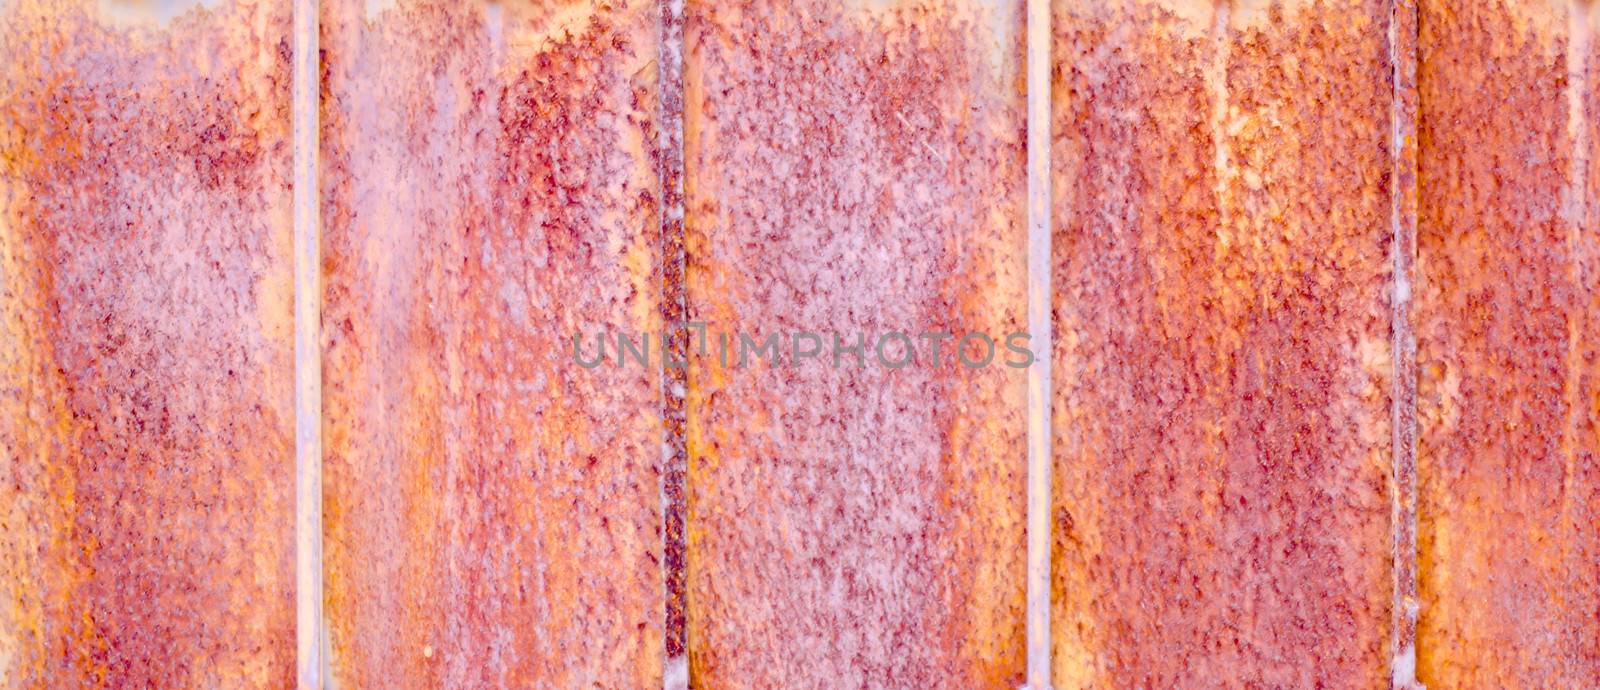 rust texture on old door